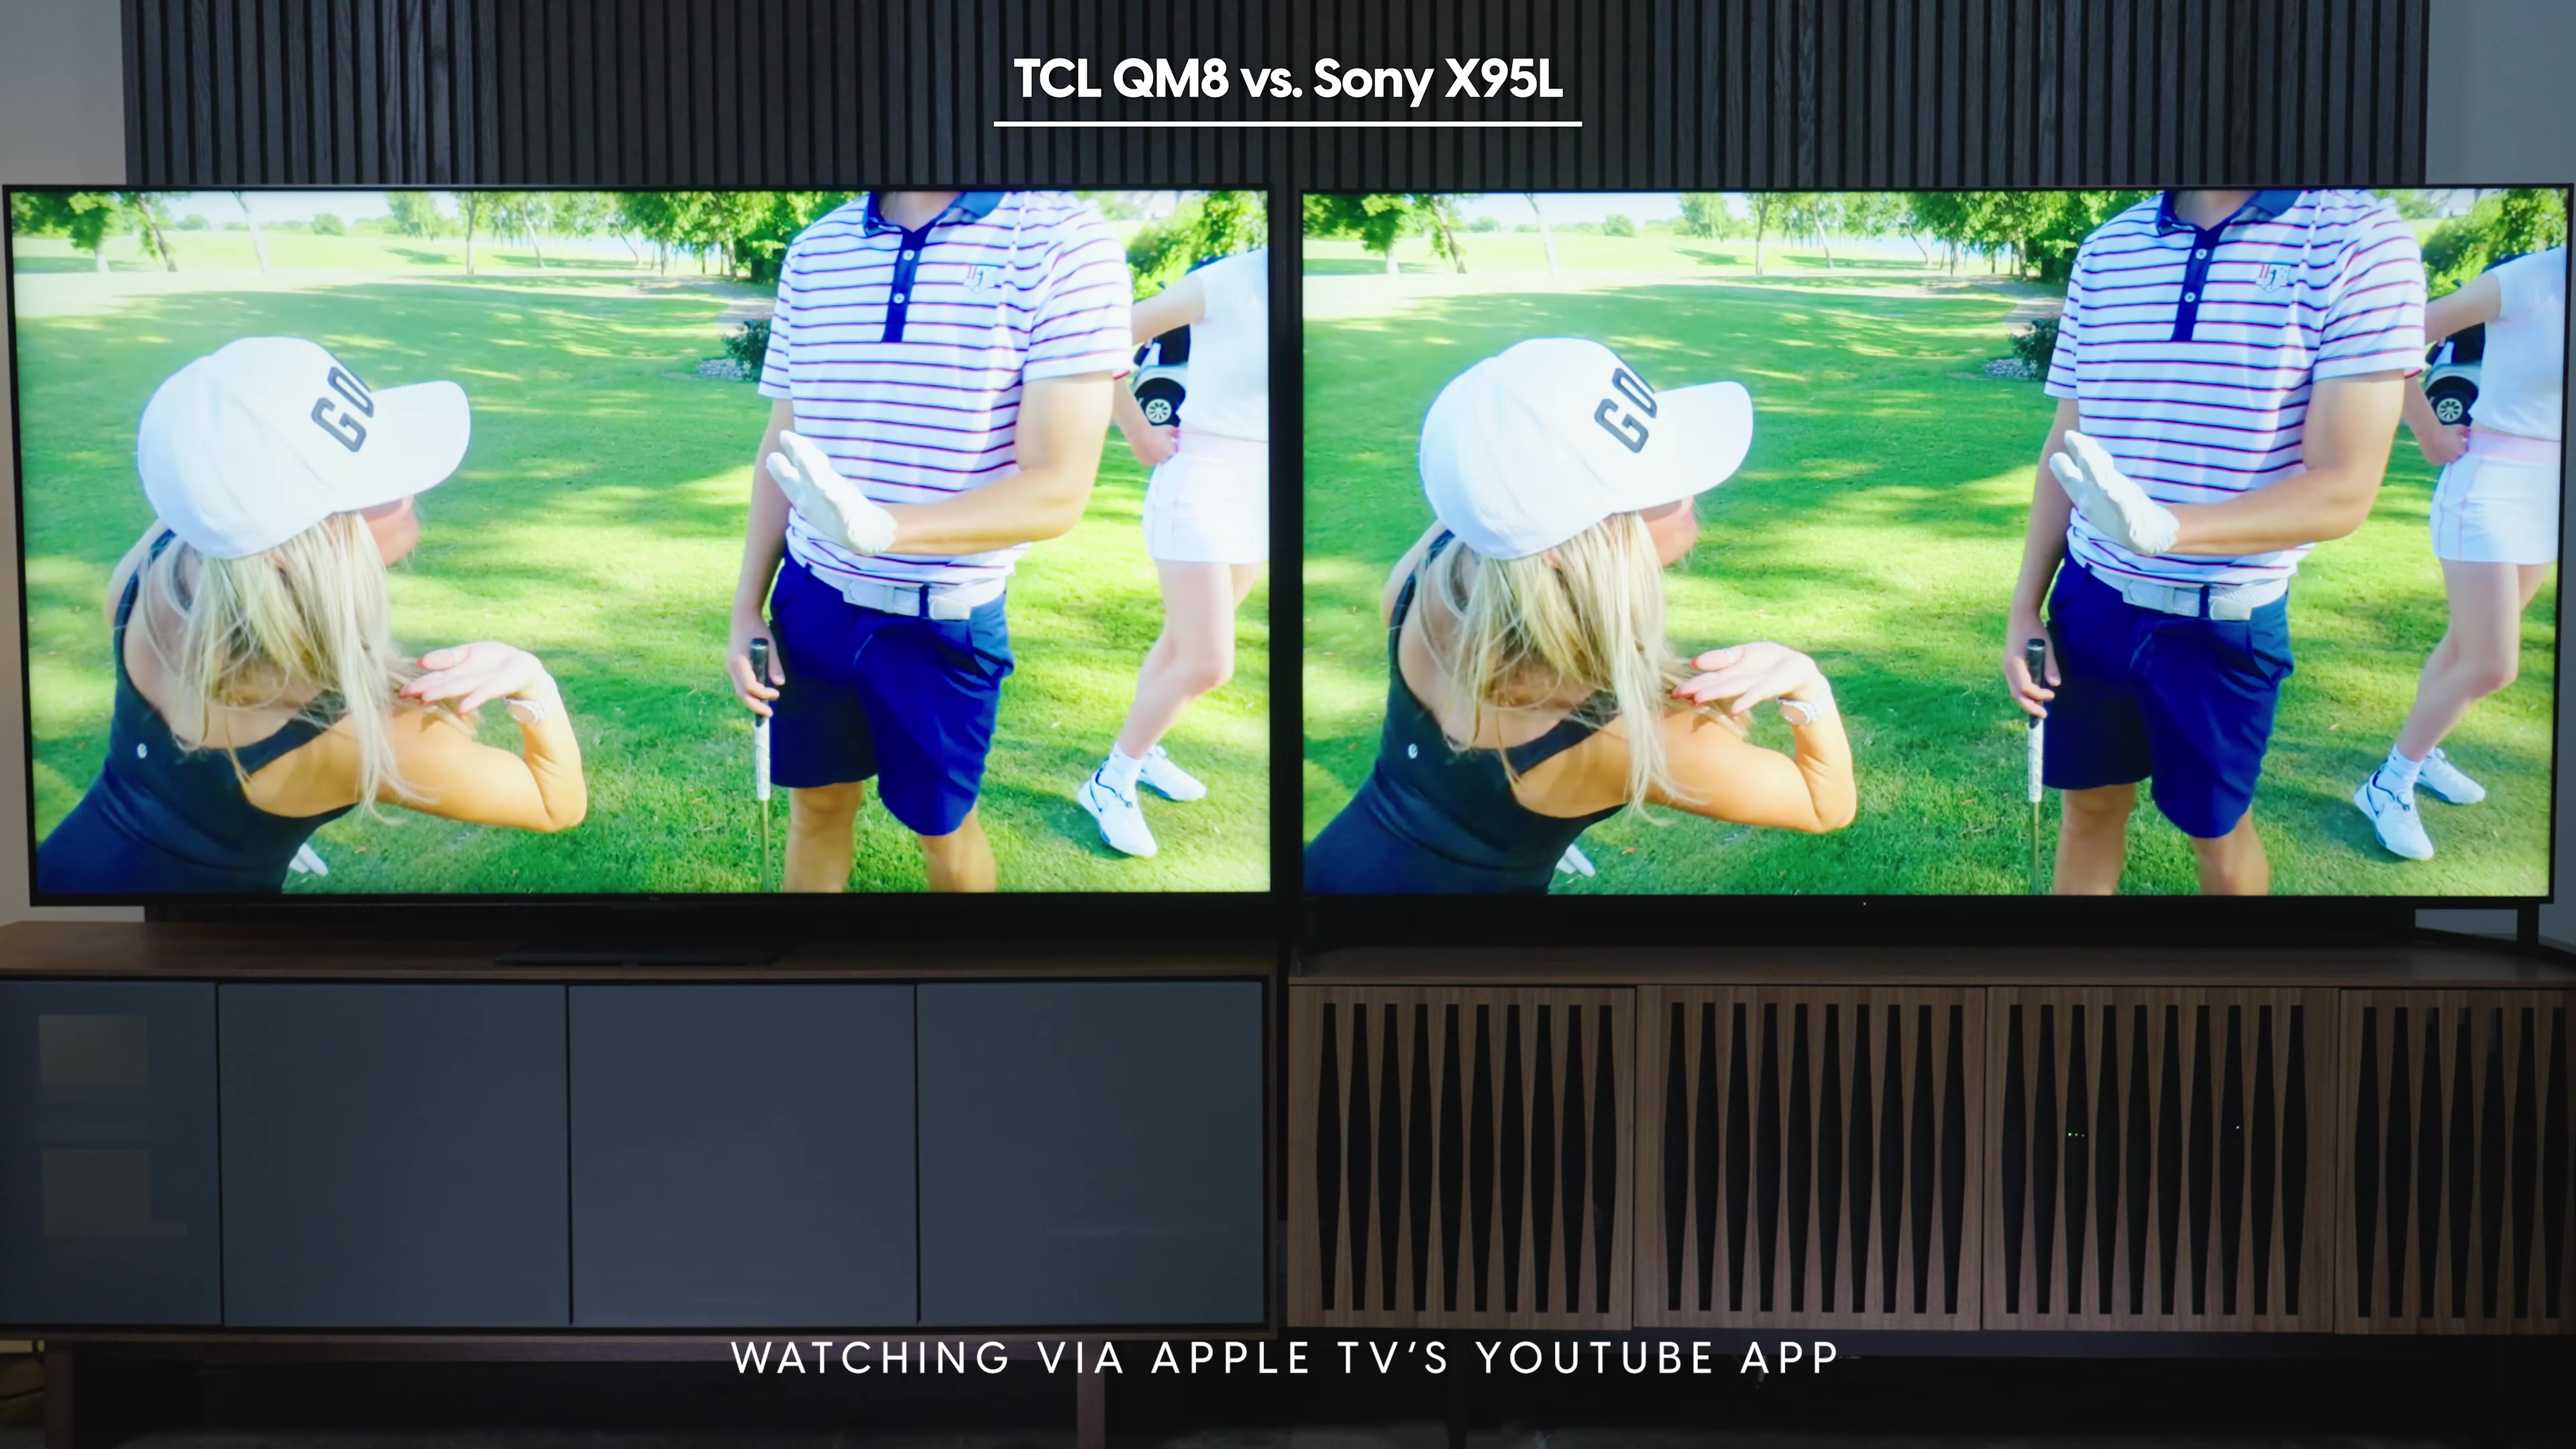 Comparación lado a lado de una captura de pantalla del canal Good Good Golf en la aplicación YouTube de Apple TV mostrada en el Sony Bravia X95L frente al TCL QM8.